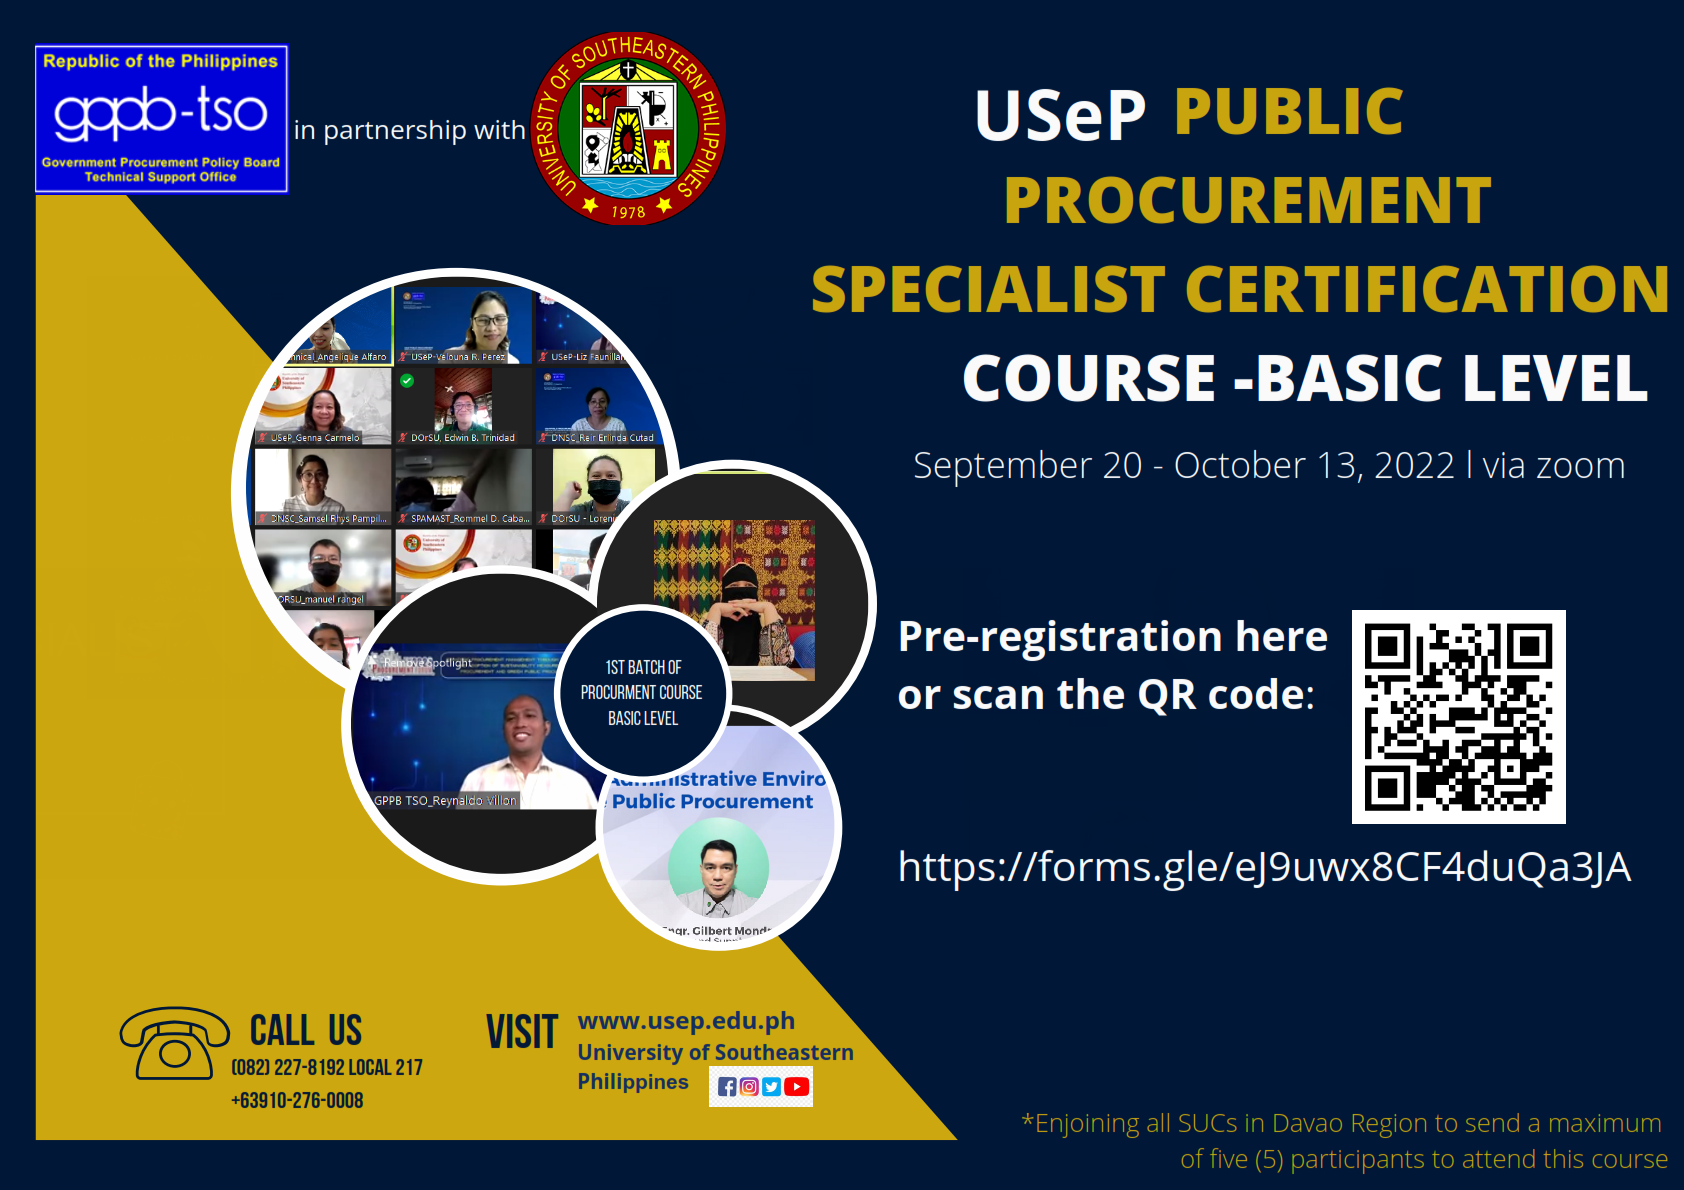 Public Procurement Specialist Certification Course-Basic Level